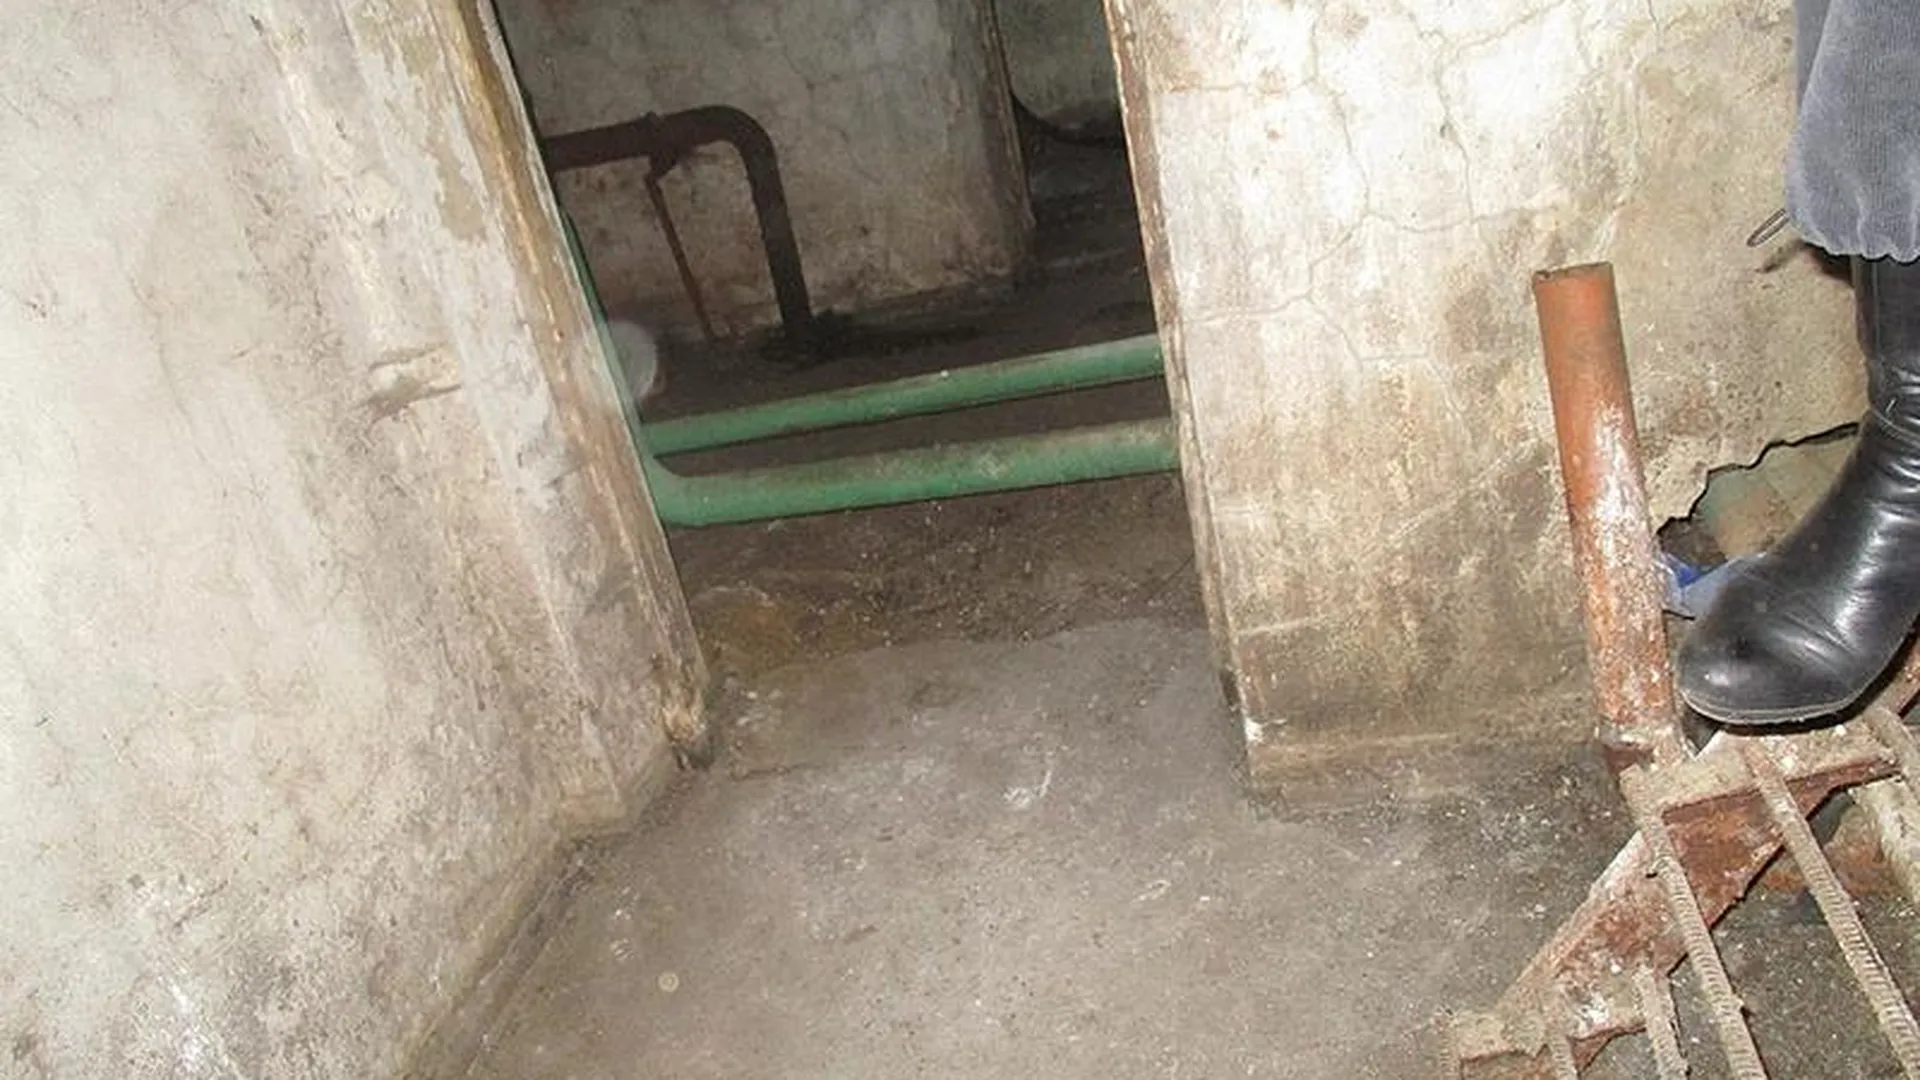 УК в Коломне игнорировала затопленный нечистотами подвал 1,5 месяца